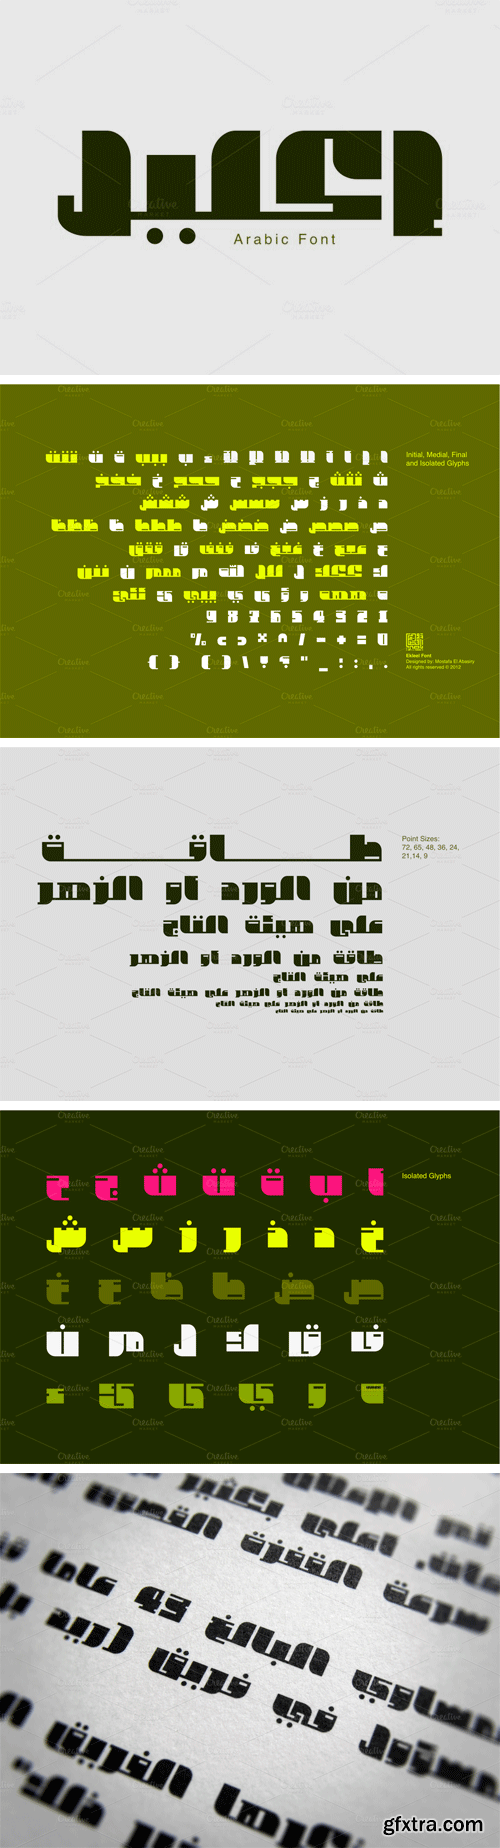 Ekleel Arabic Font $15